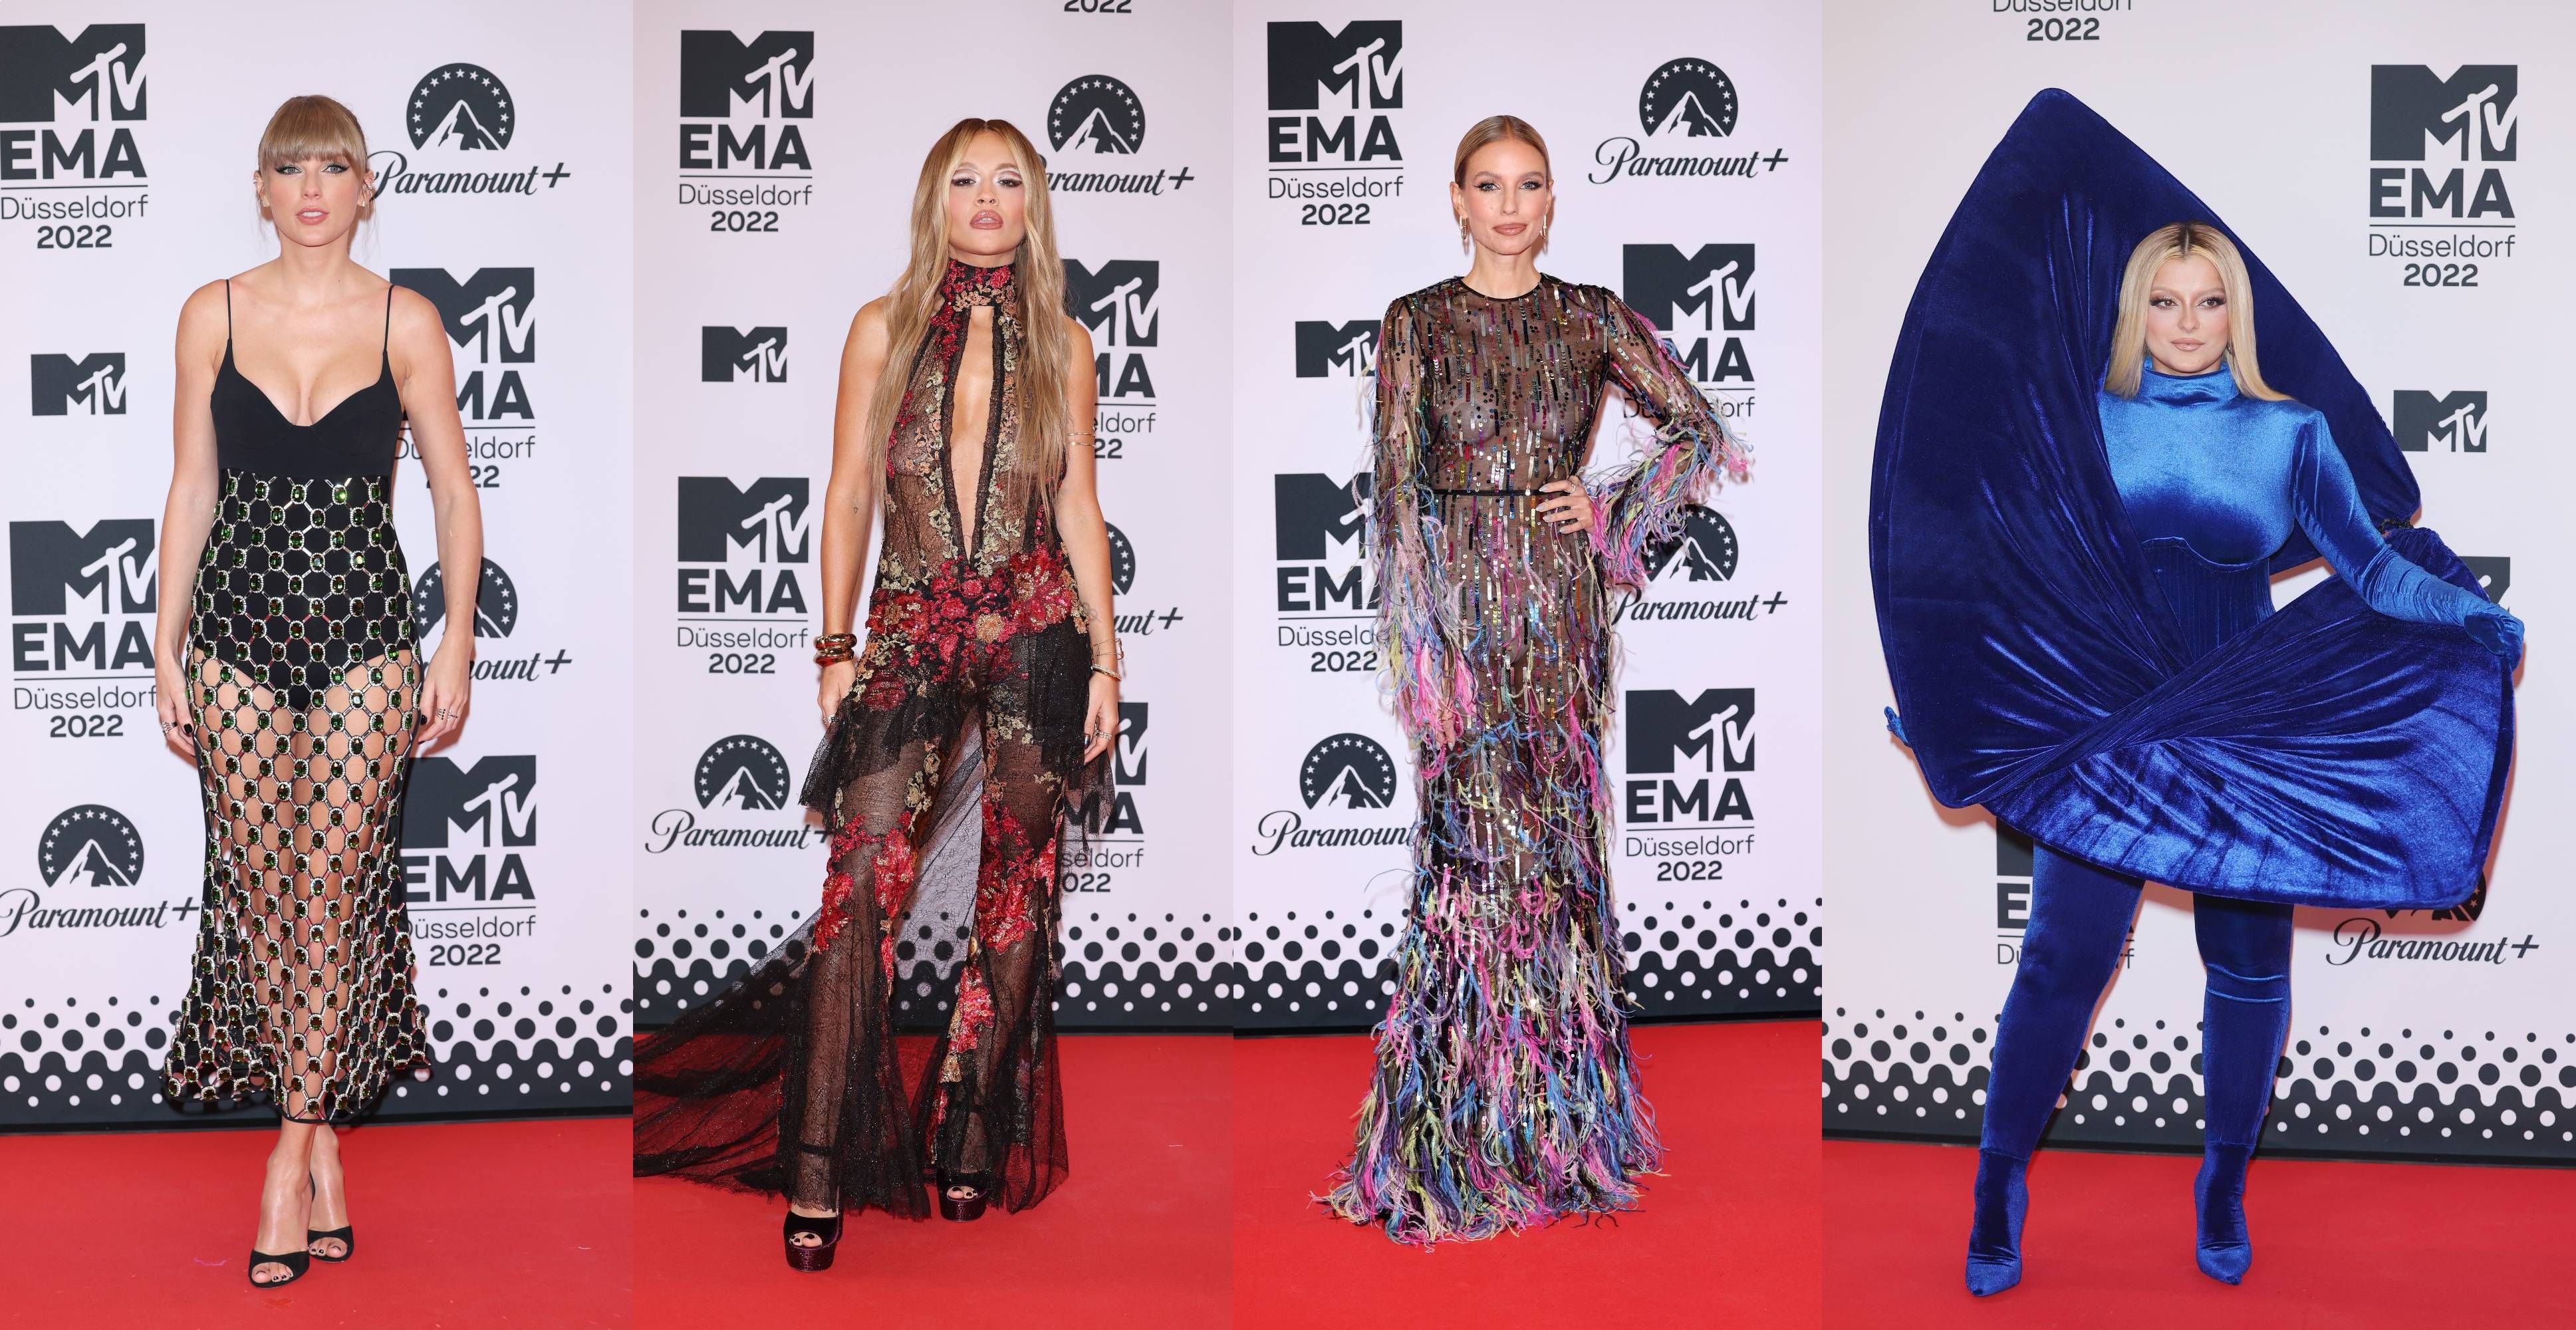 Inminente Inodoro Chaise longue MTV EMAs 2022: los mejores 'looks' de la alfombra roja